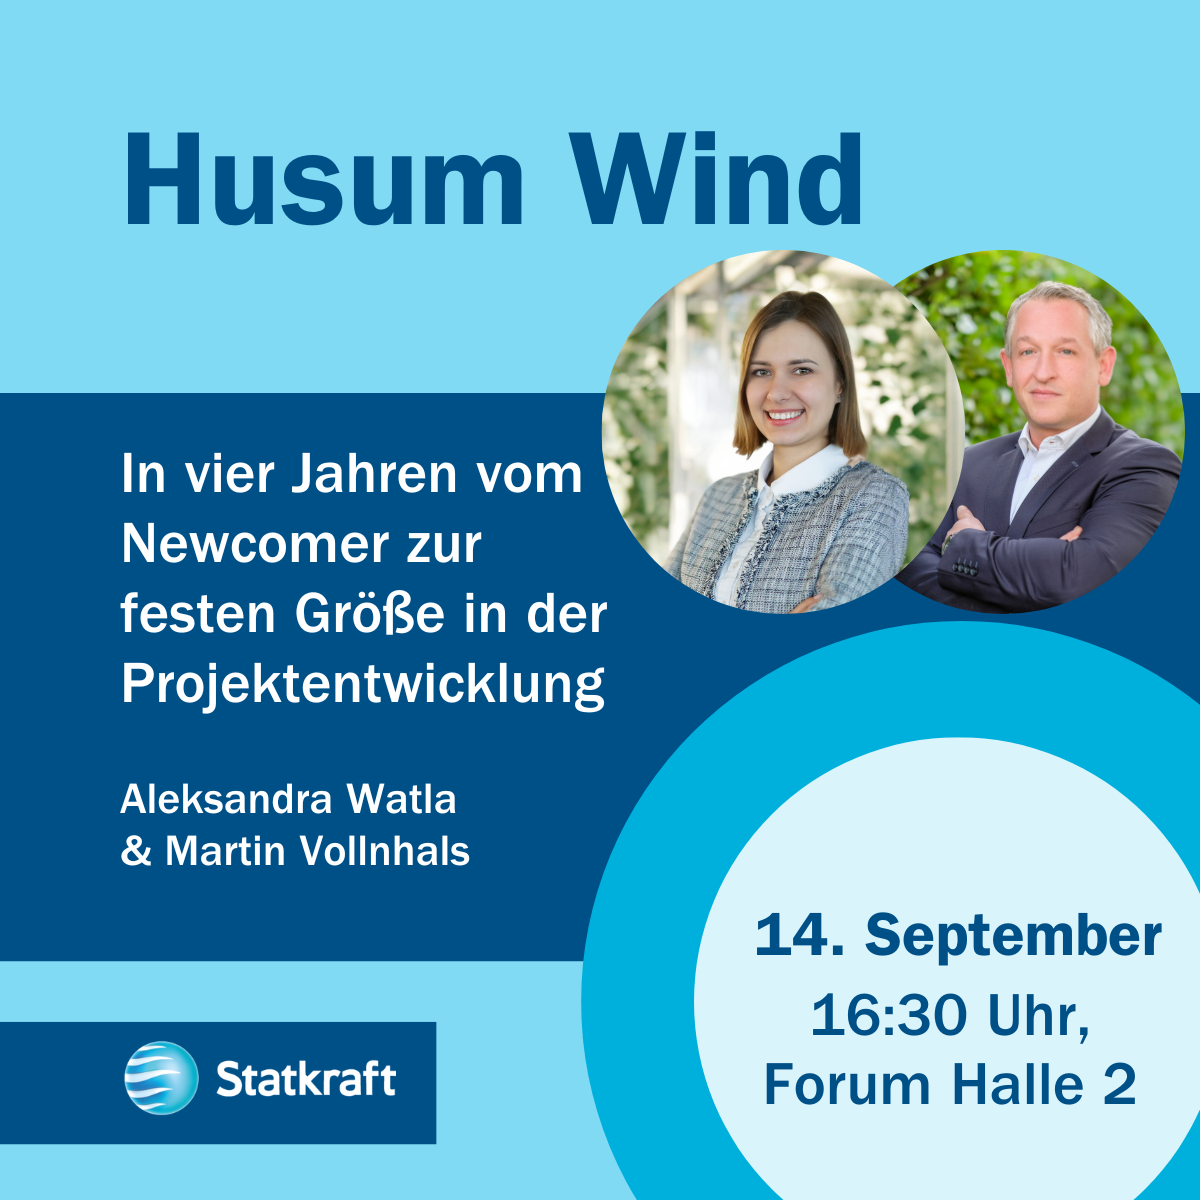 Aleksandra Watla und Martin Vollnhals halten einen Vortrag am Donnerstag 16.30 in Halle 2 